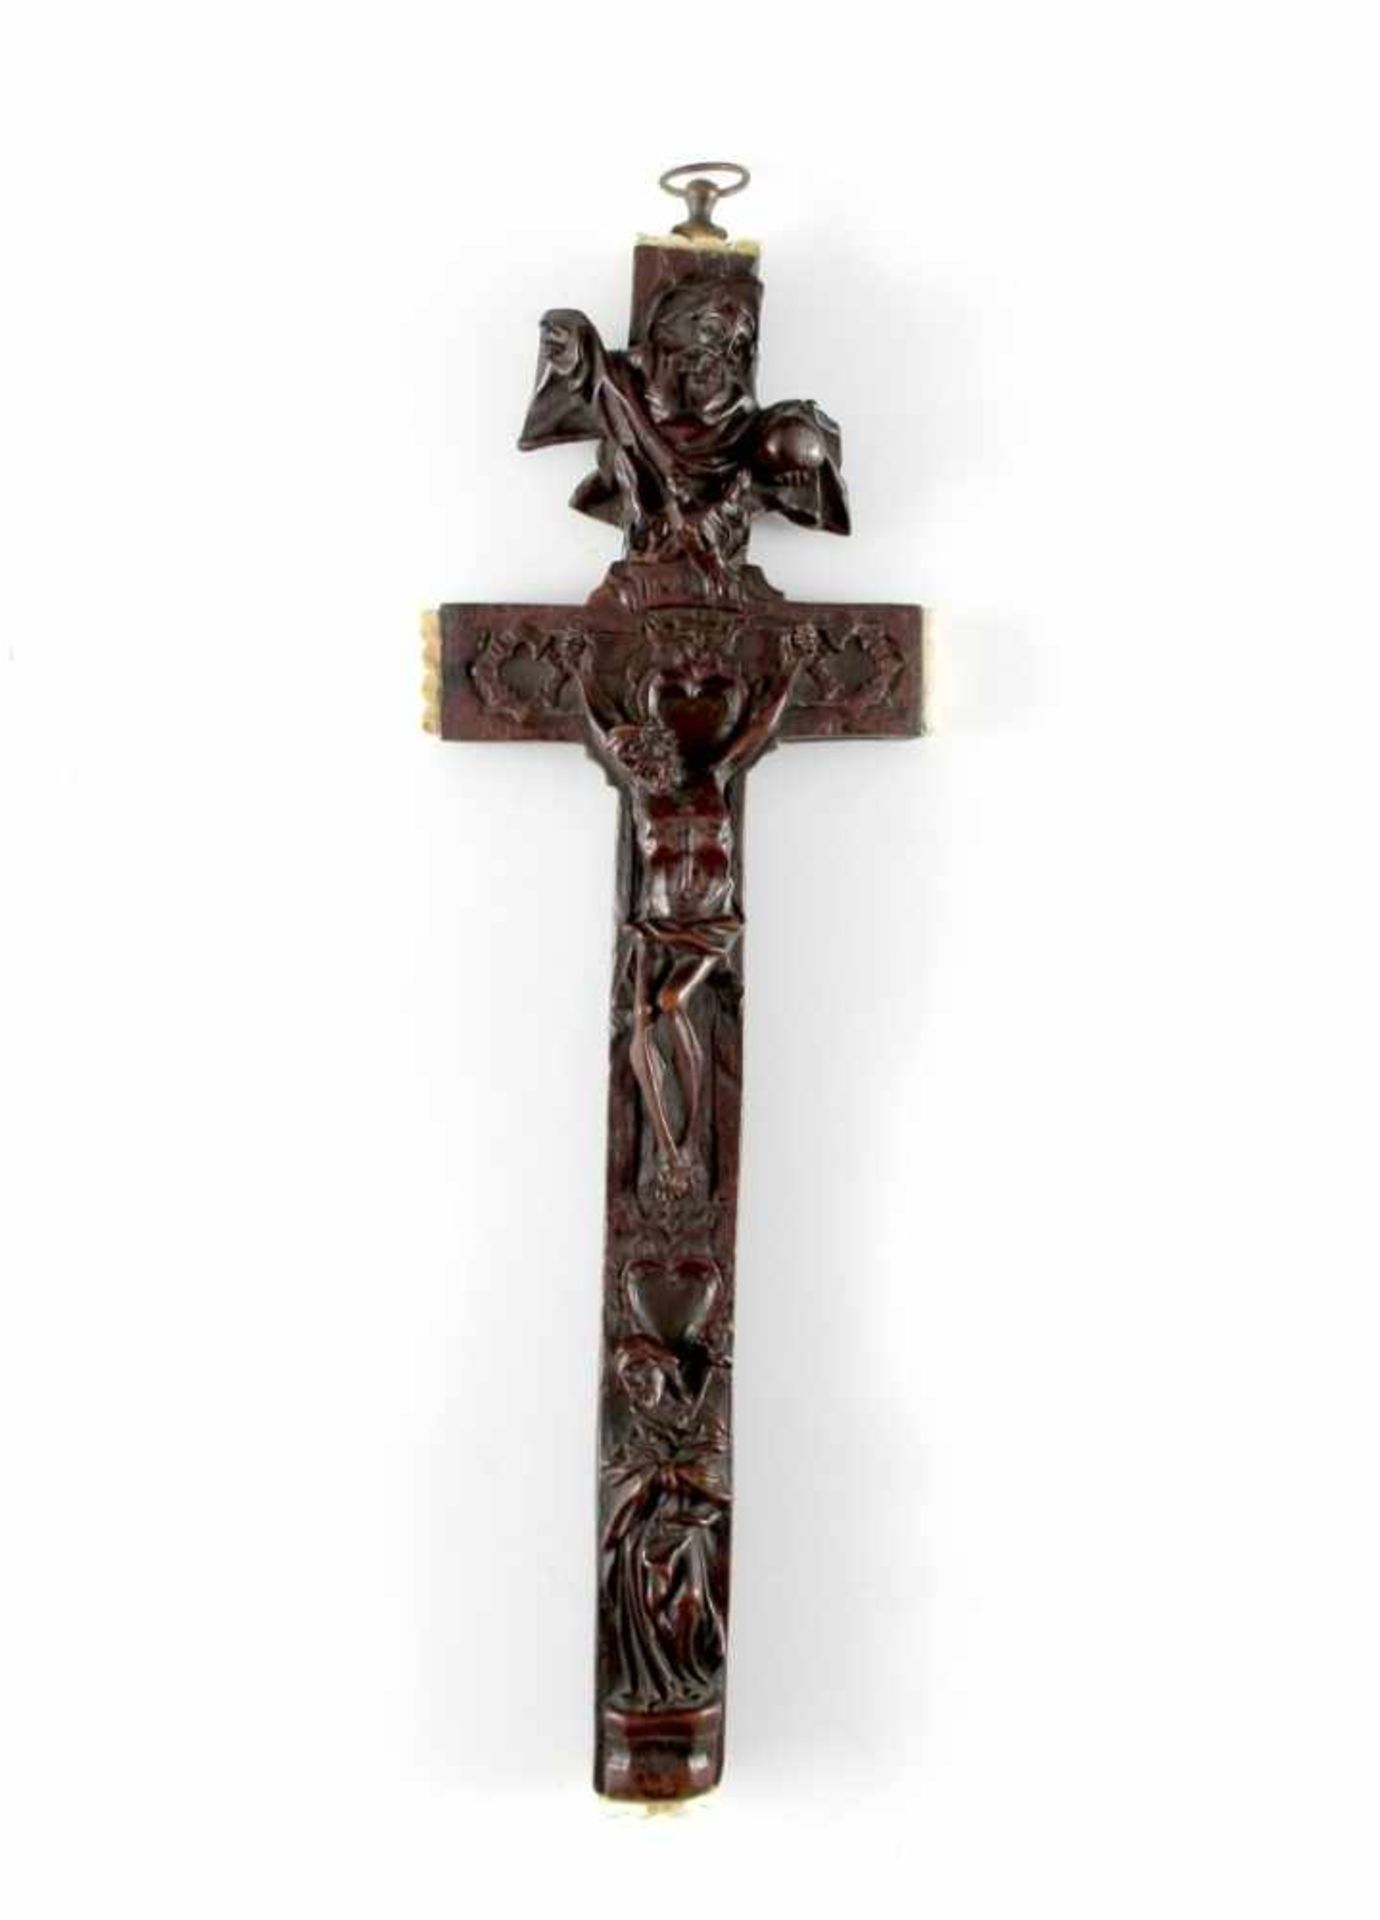 Reliquienkreuz. Gott Vater, Christus und Maria. Ende 18. Jh. H 32,5 cm